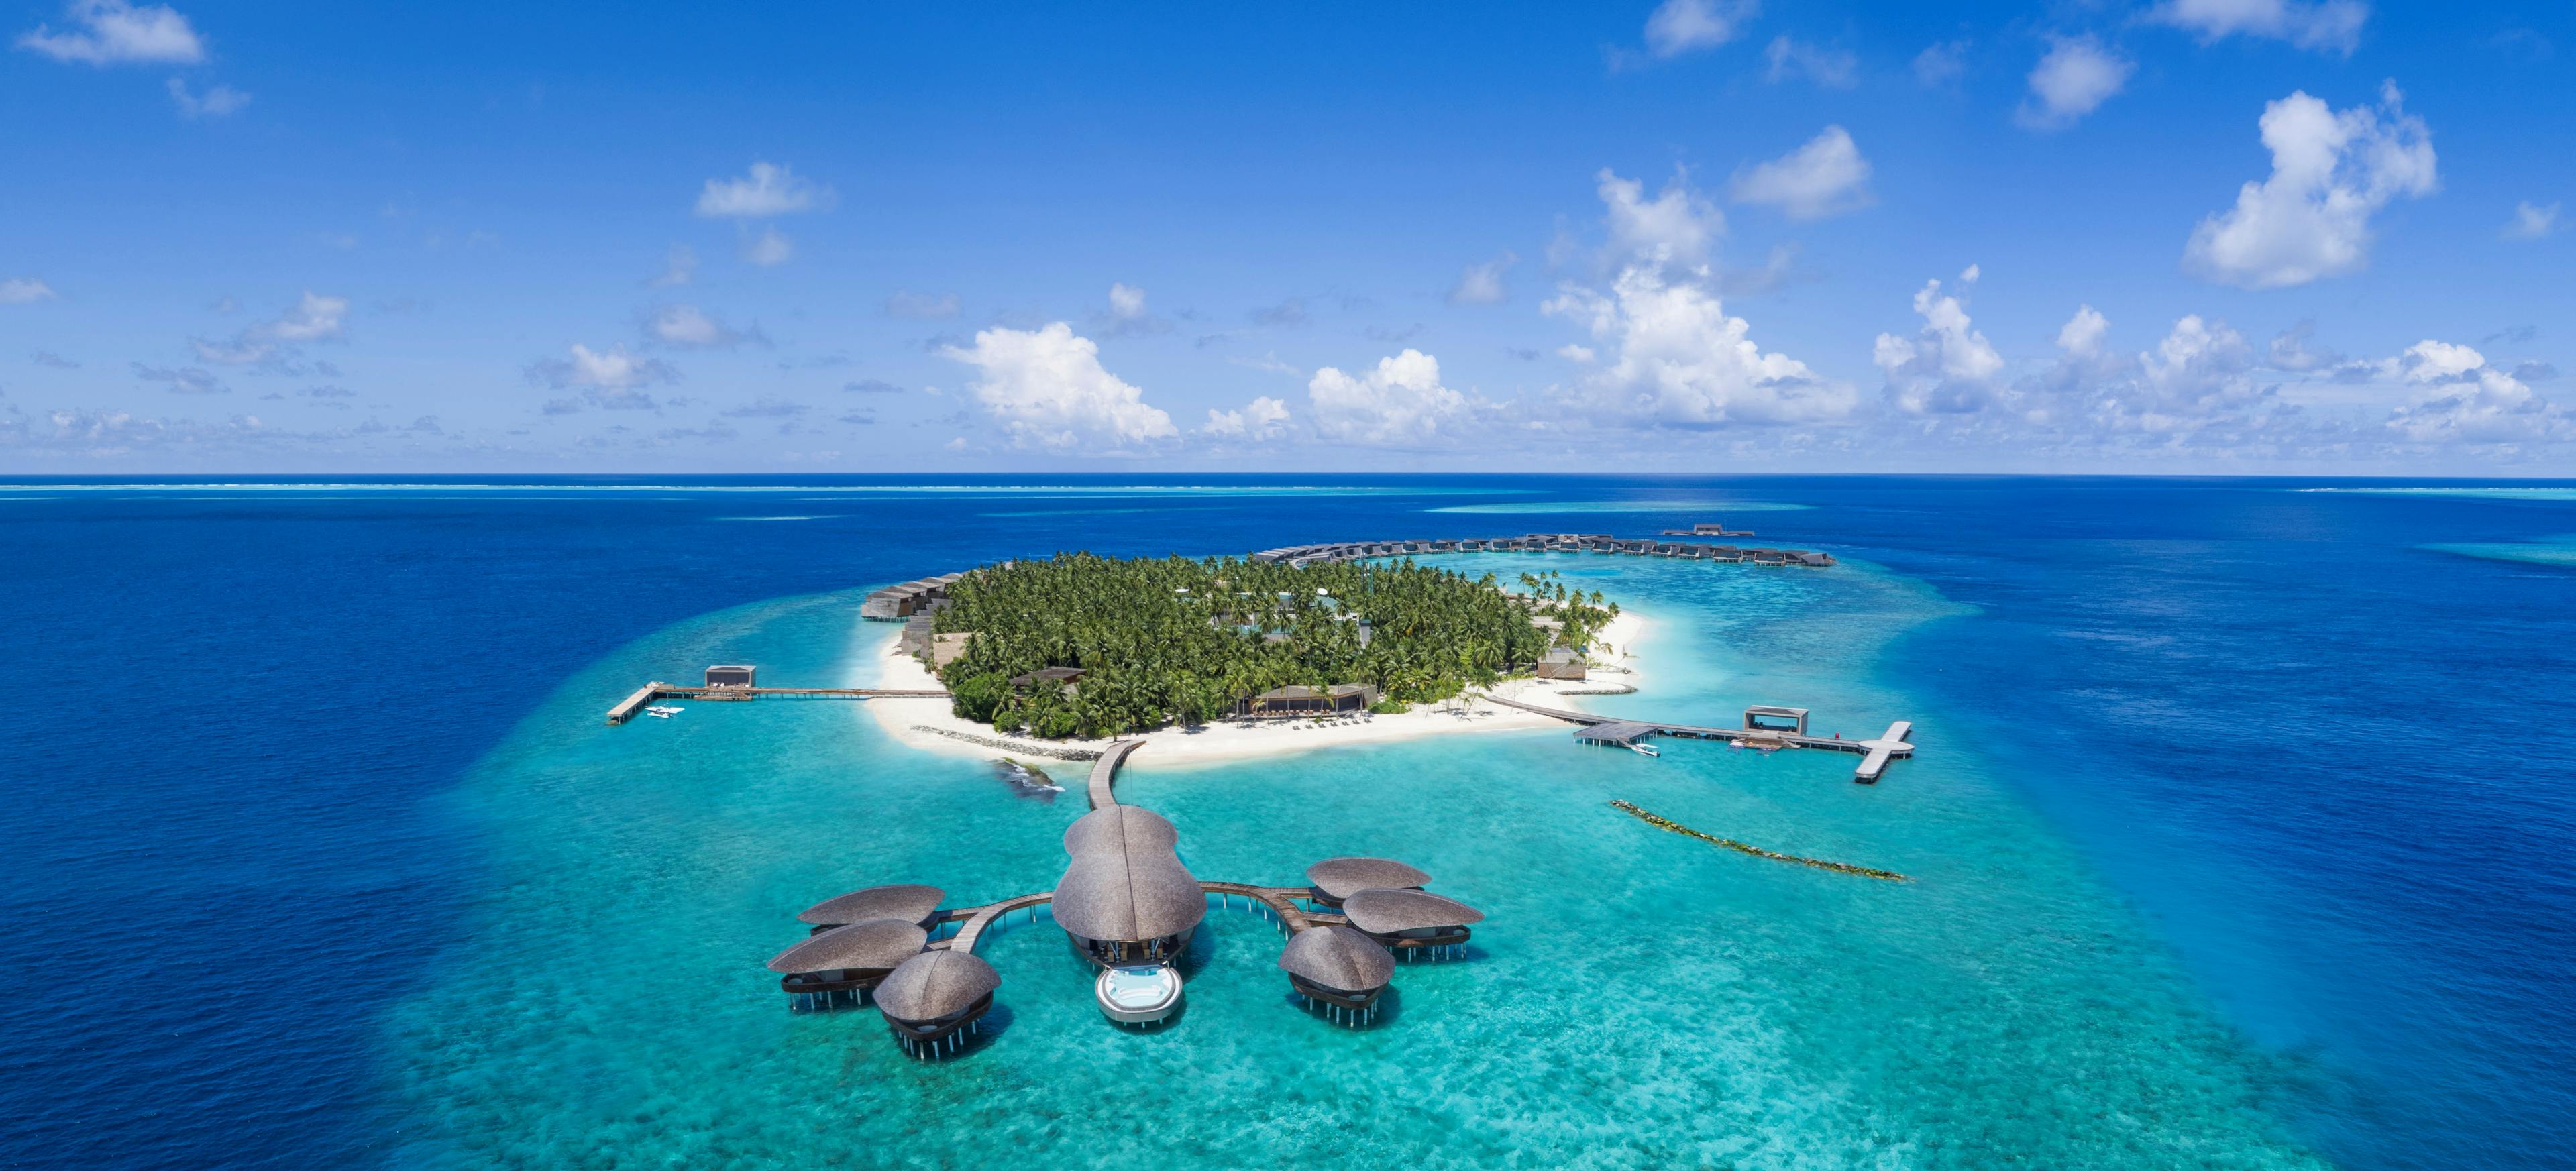 St. Regis Maldives Vommuli Resort 